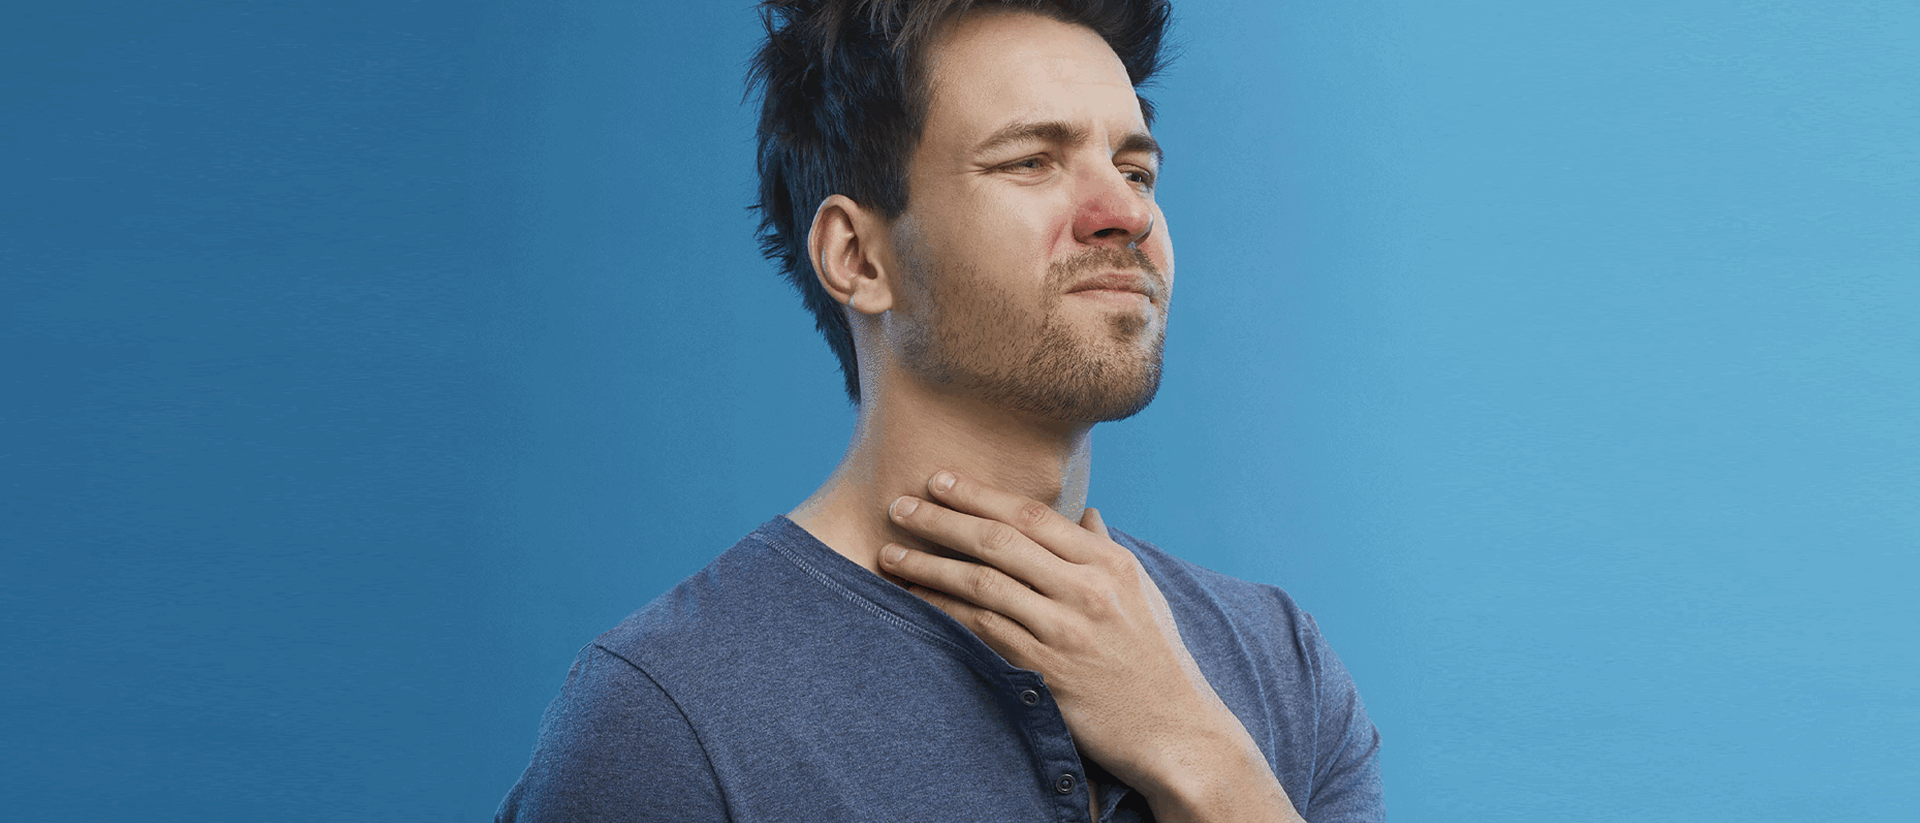 O xarope Vick ajuda a controlar a tosse rapidamente porque ele envolve a  garganta deixando uma camada protetora proporcionando uma sensação  refrescante., By Farmácias Independente